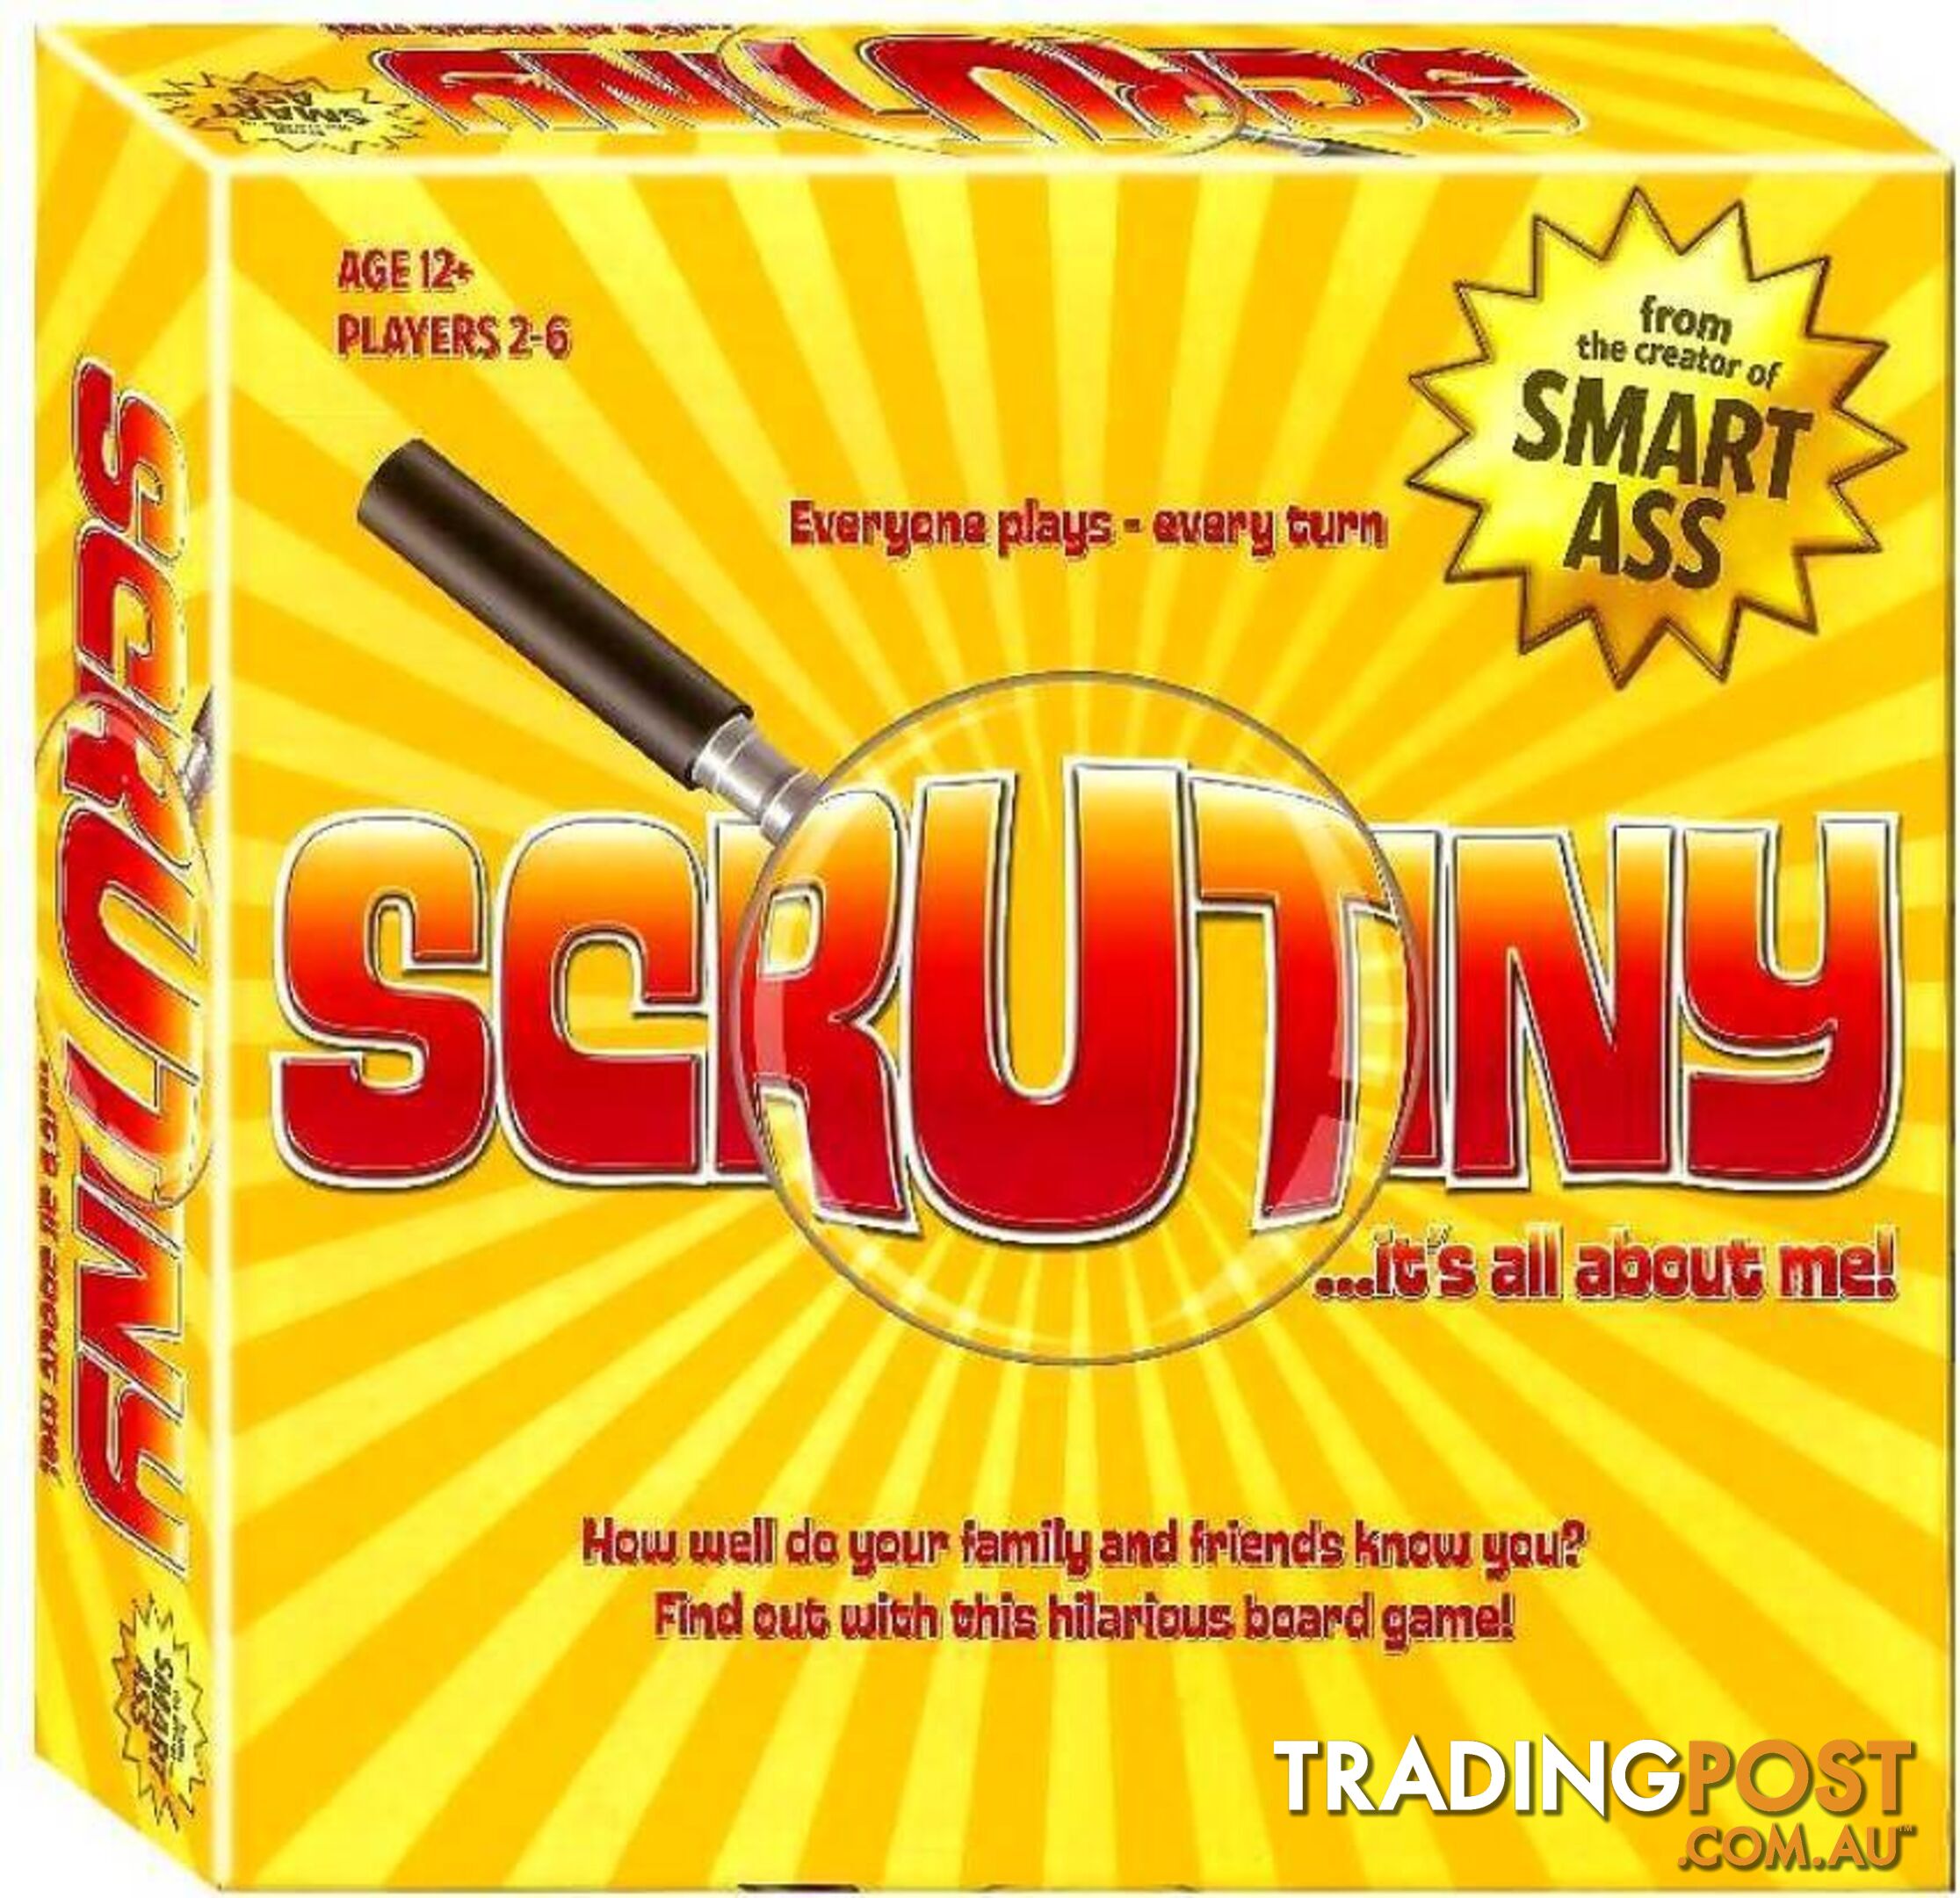 Scrutiny It's All About Me - Jedko Games - Jdaaa039004 - 9369999039004